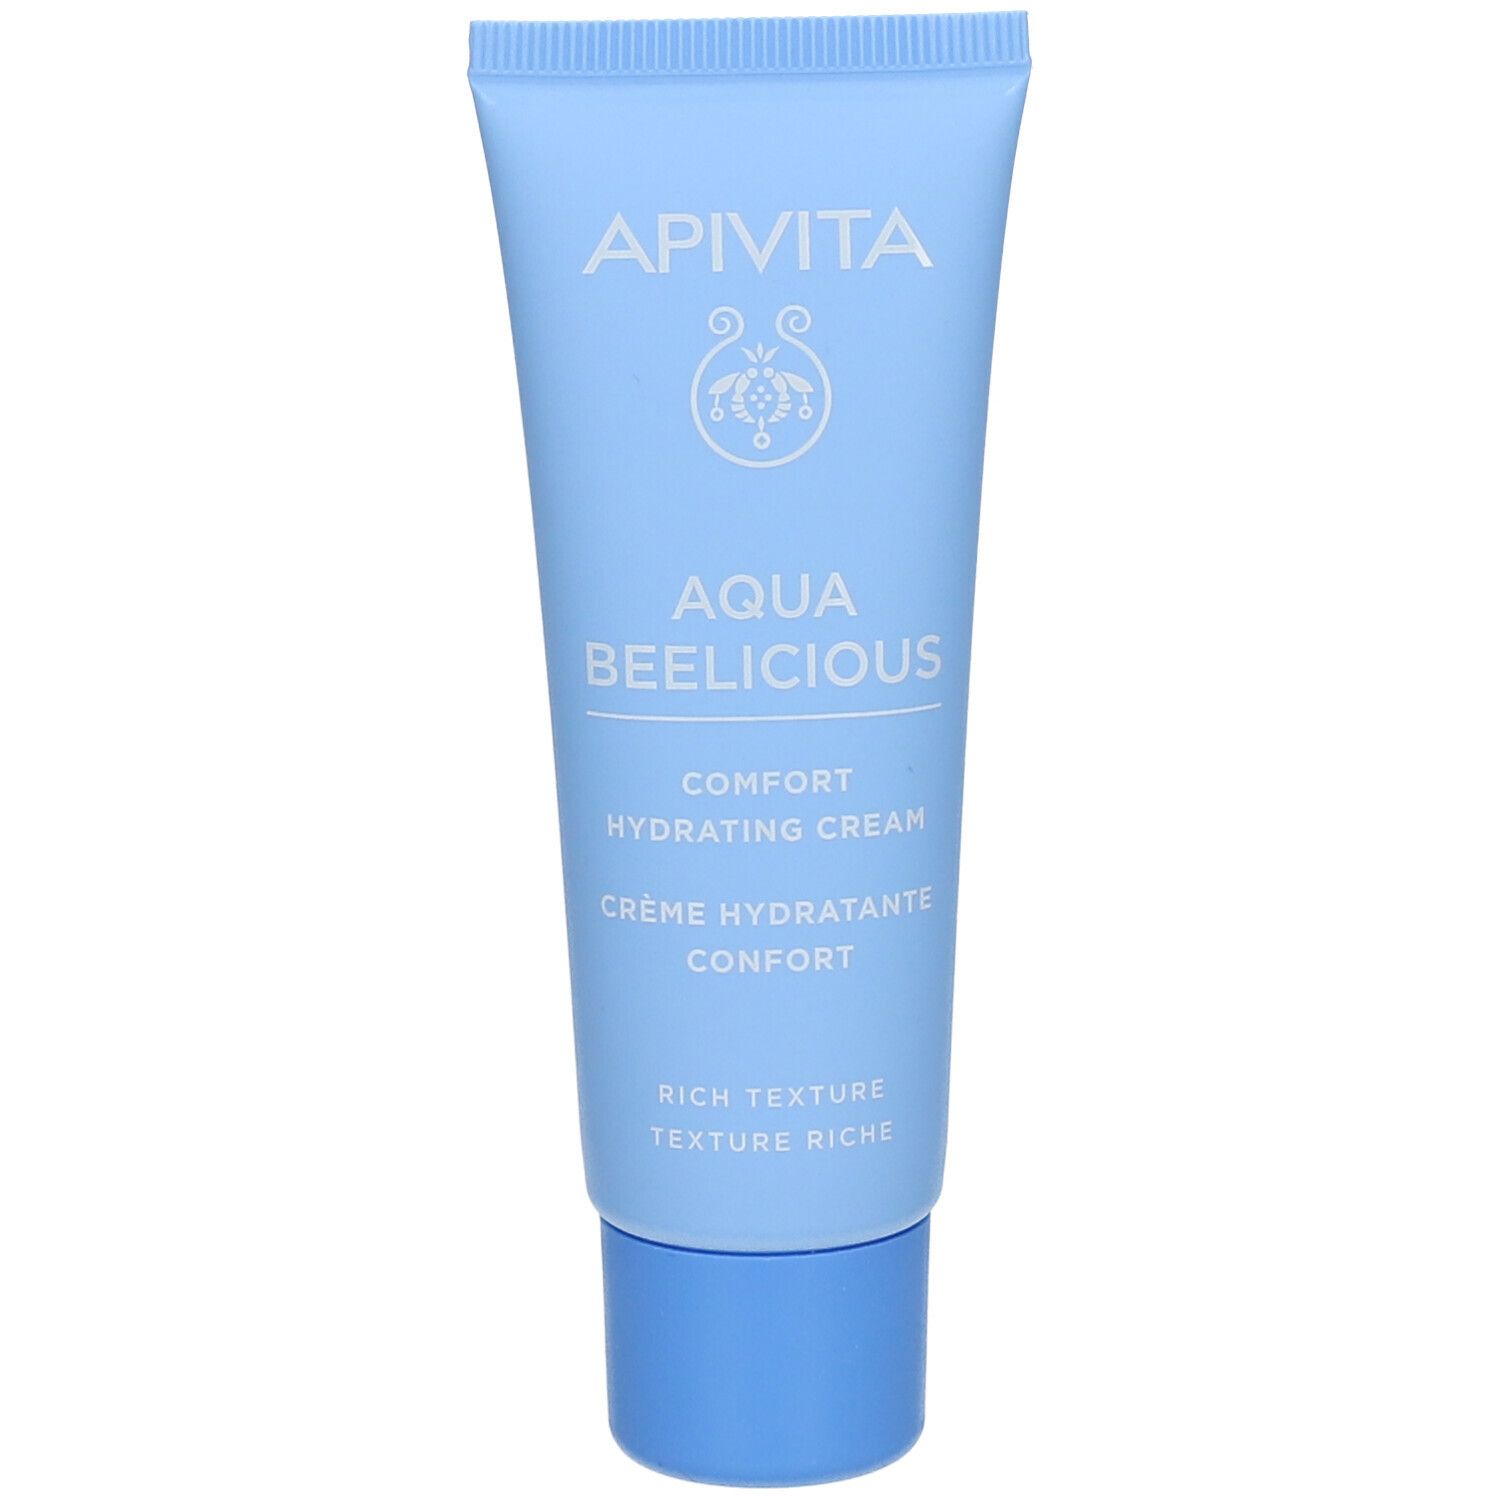 Apivita Aqua Beelicious Crème Hydratante Confort - Riche